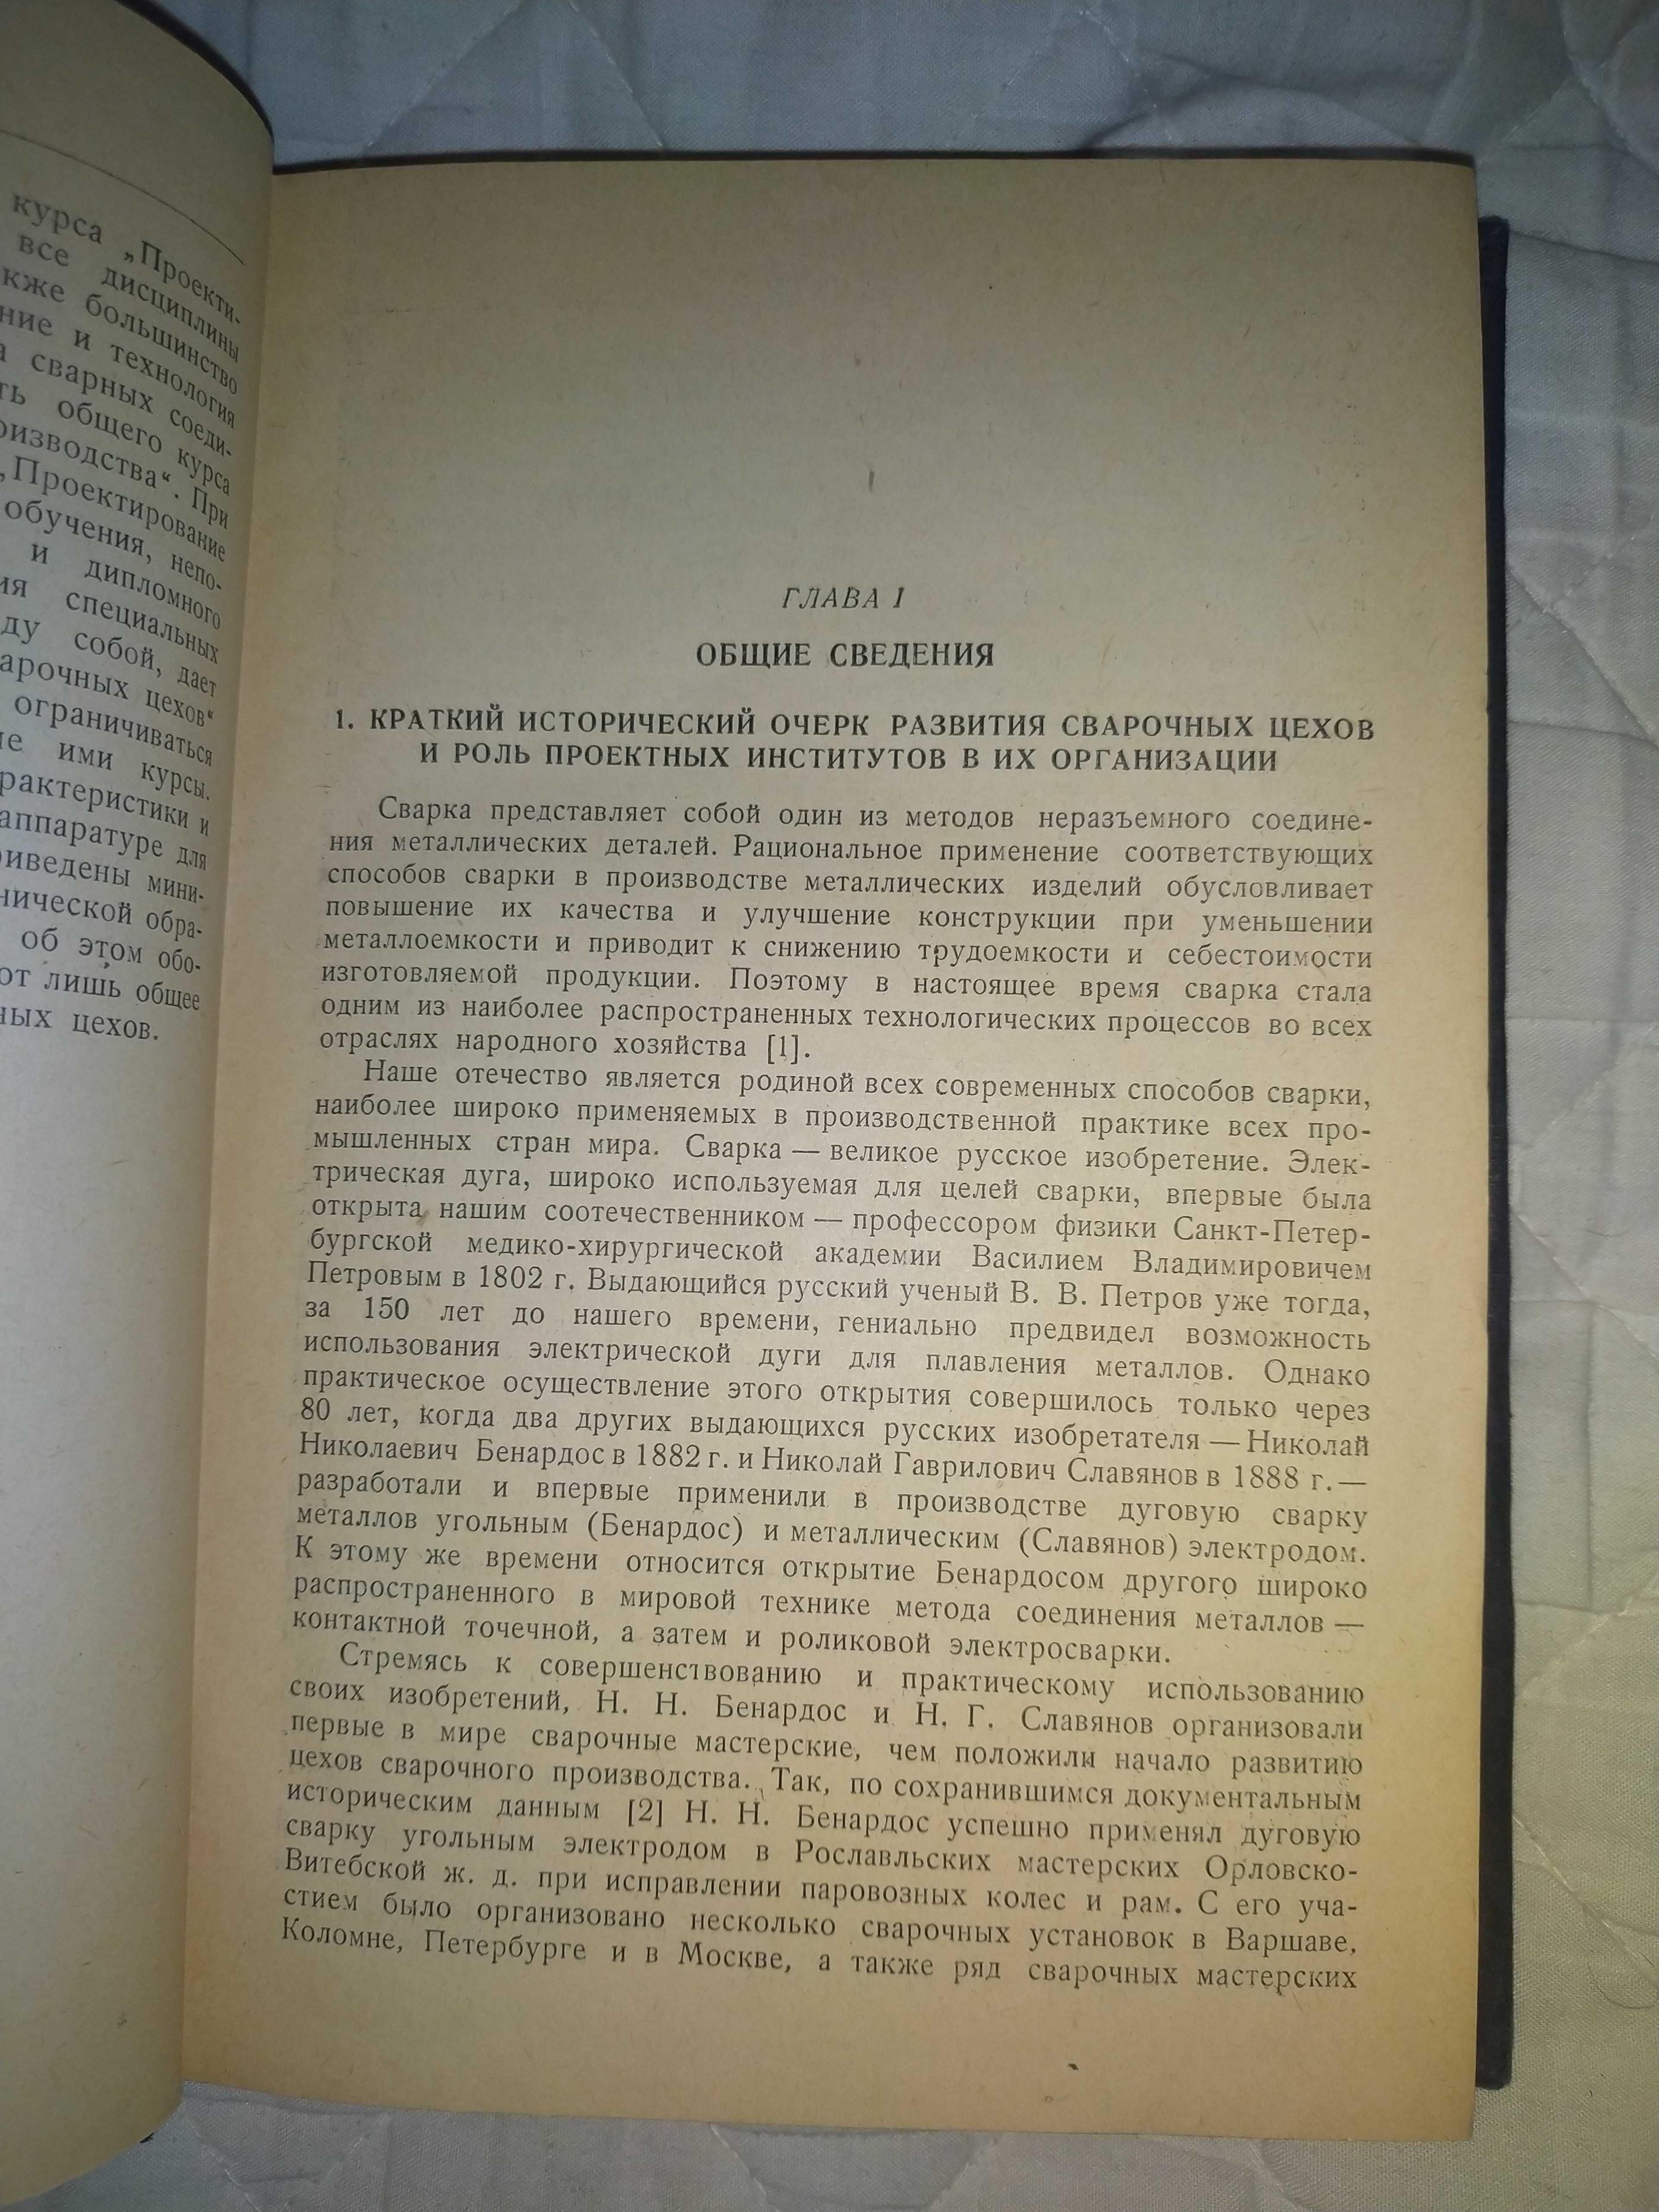 Основы проектирования сварочных цехов Машгиз 1952